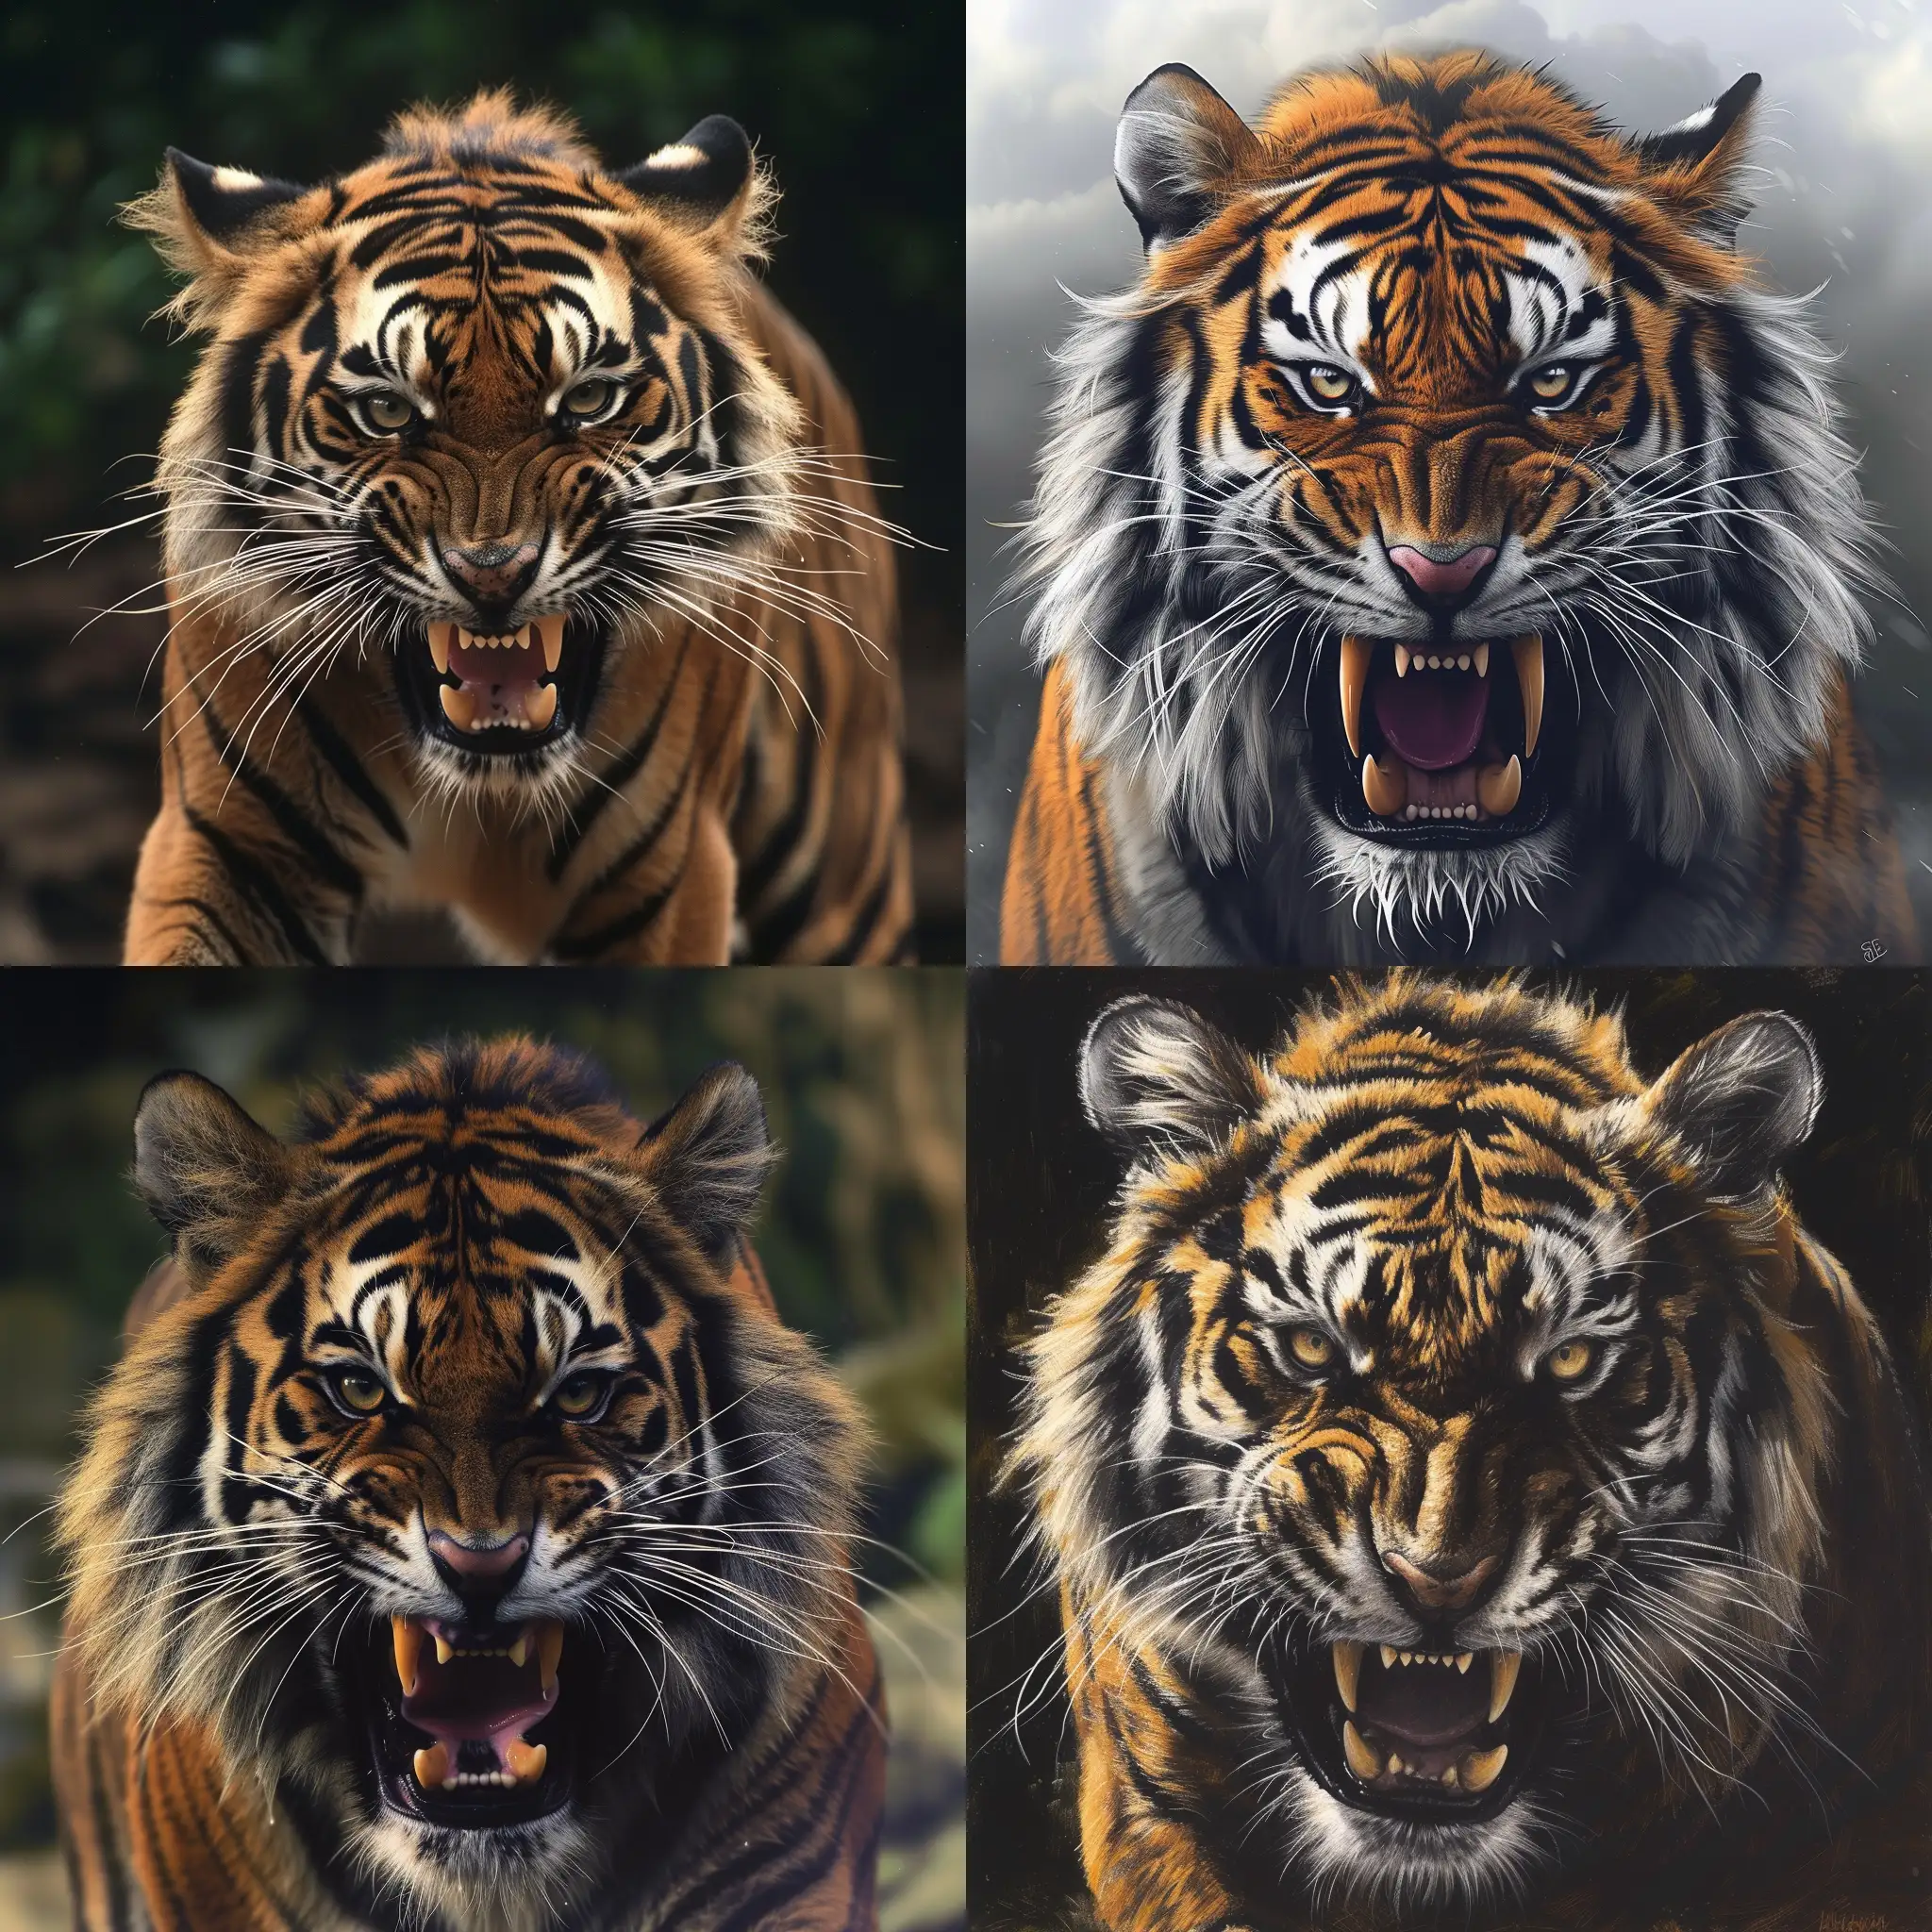 Fierce-Tiger-Roaring-with-Intensity